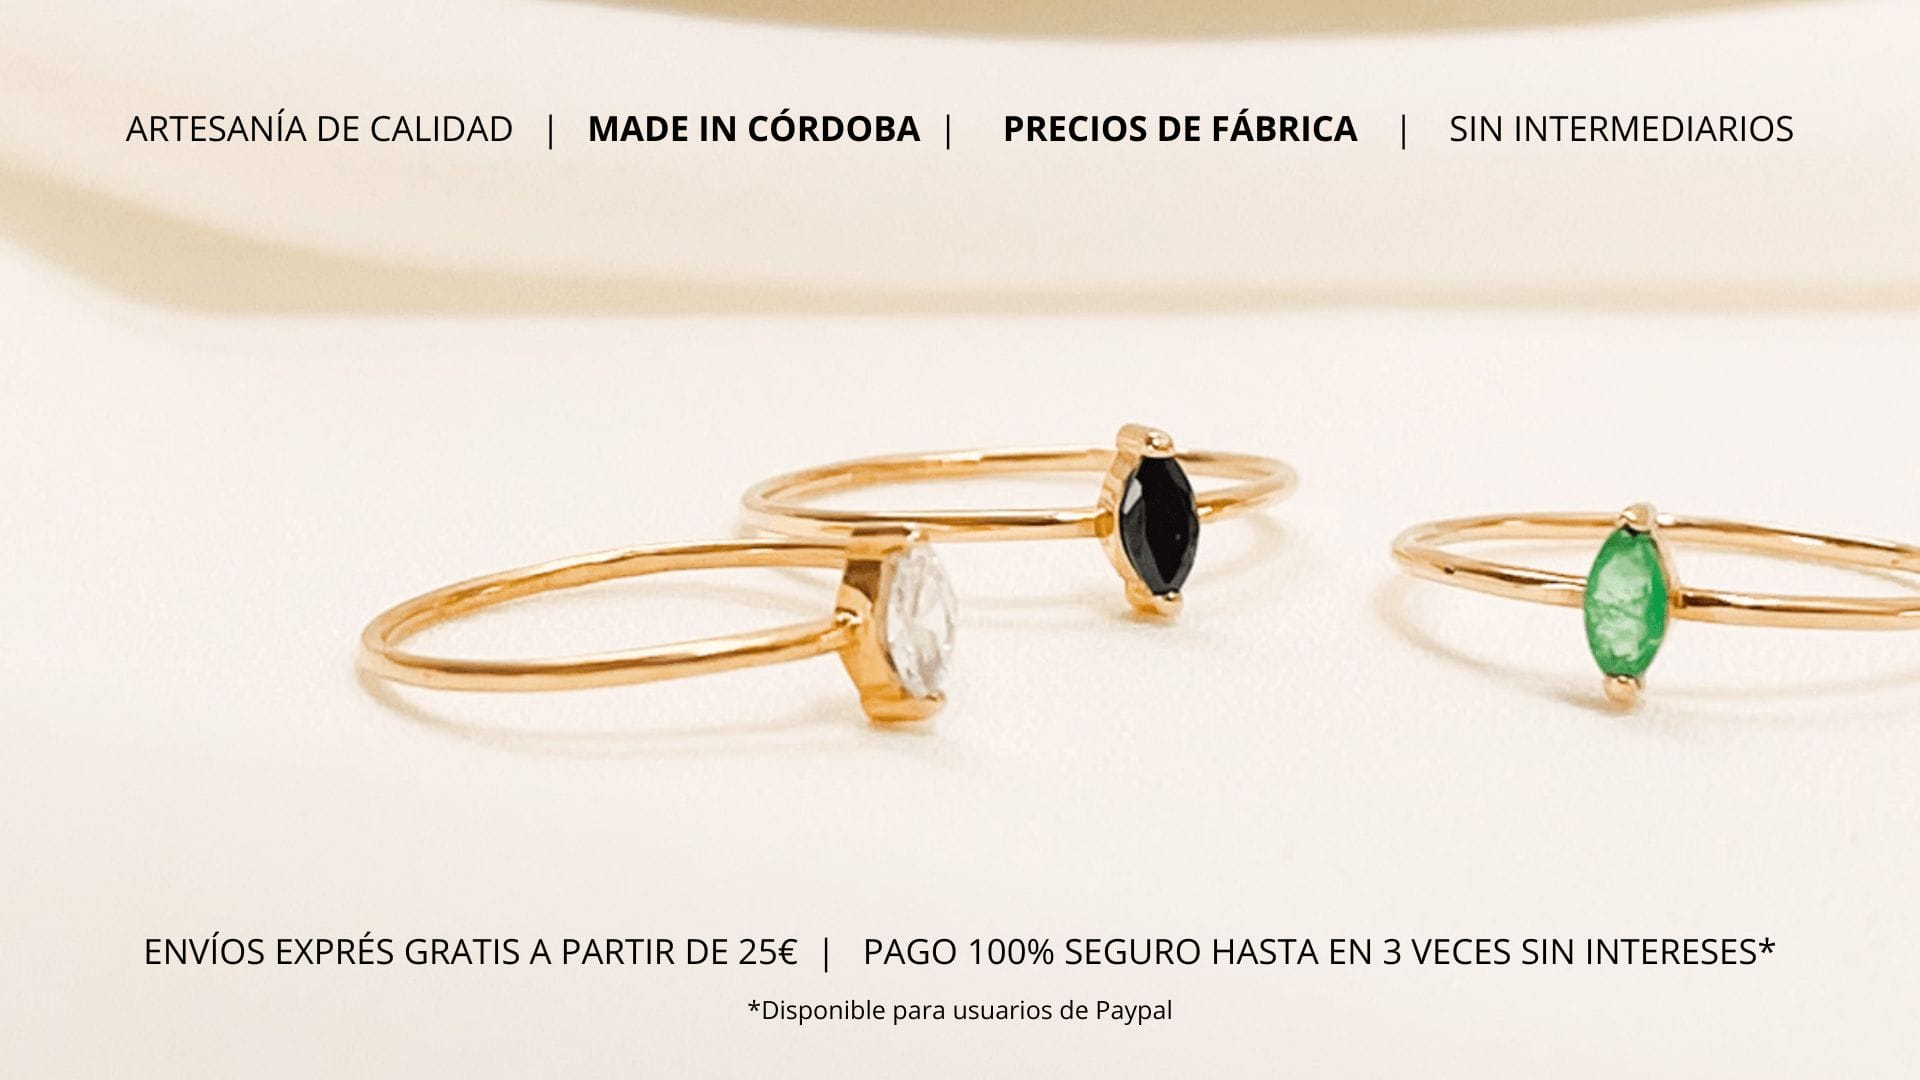 Aniuk Joyas Artesanas Online Joyas hechas en Espana Cordoba Tienda de joyas online